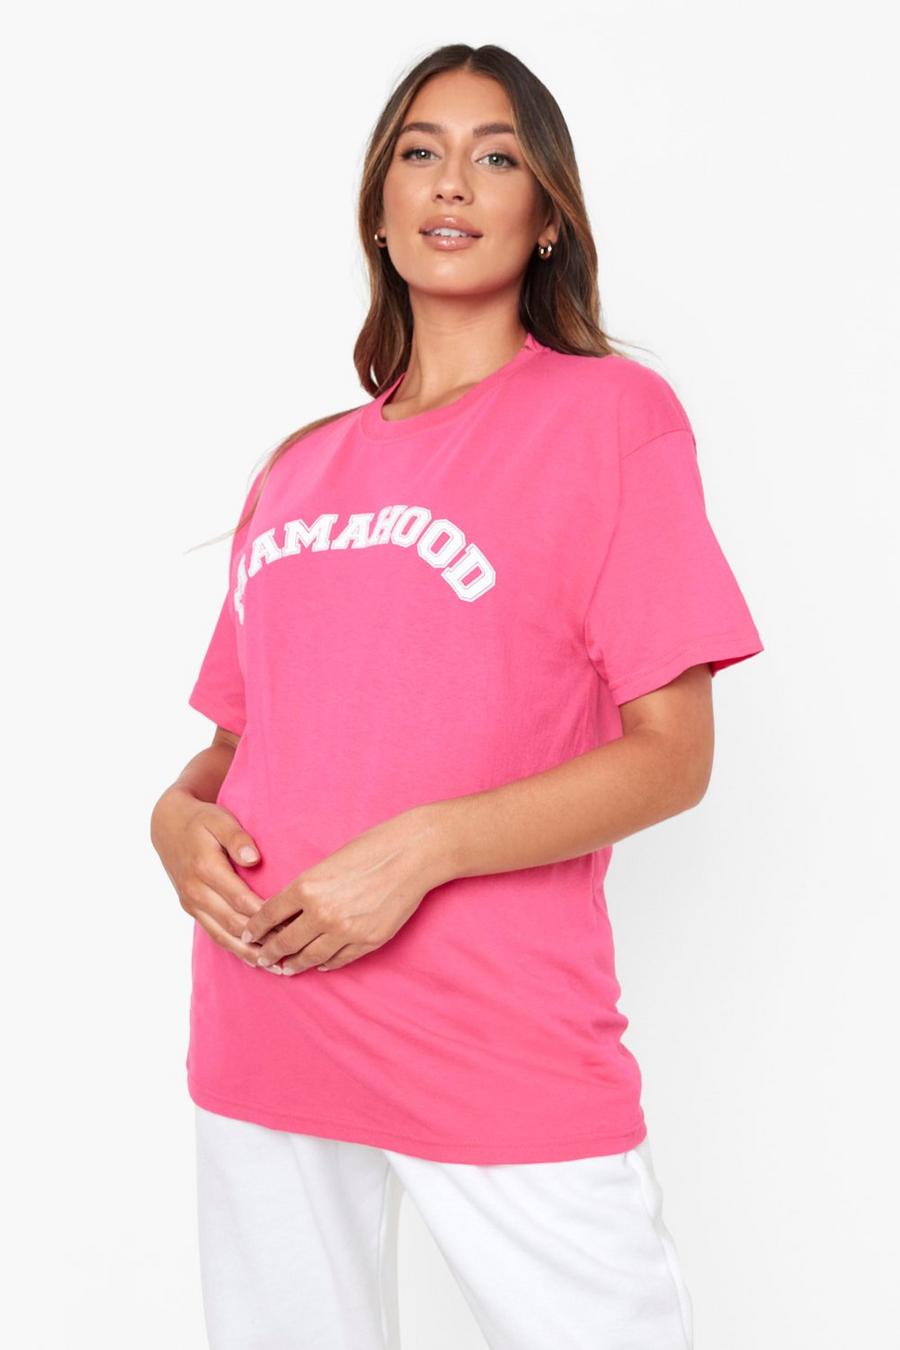 Hot pink Maternity 'Mamahood' Slogan T-shirt image number 1